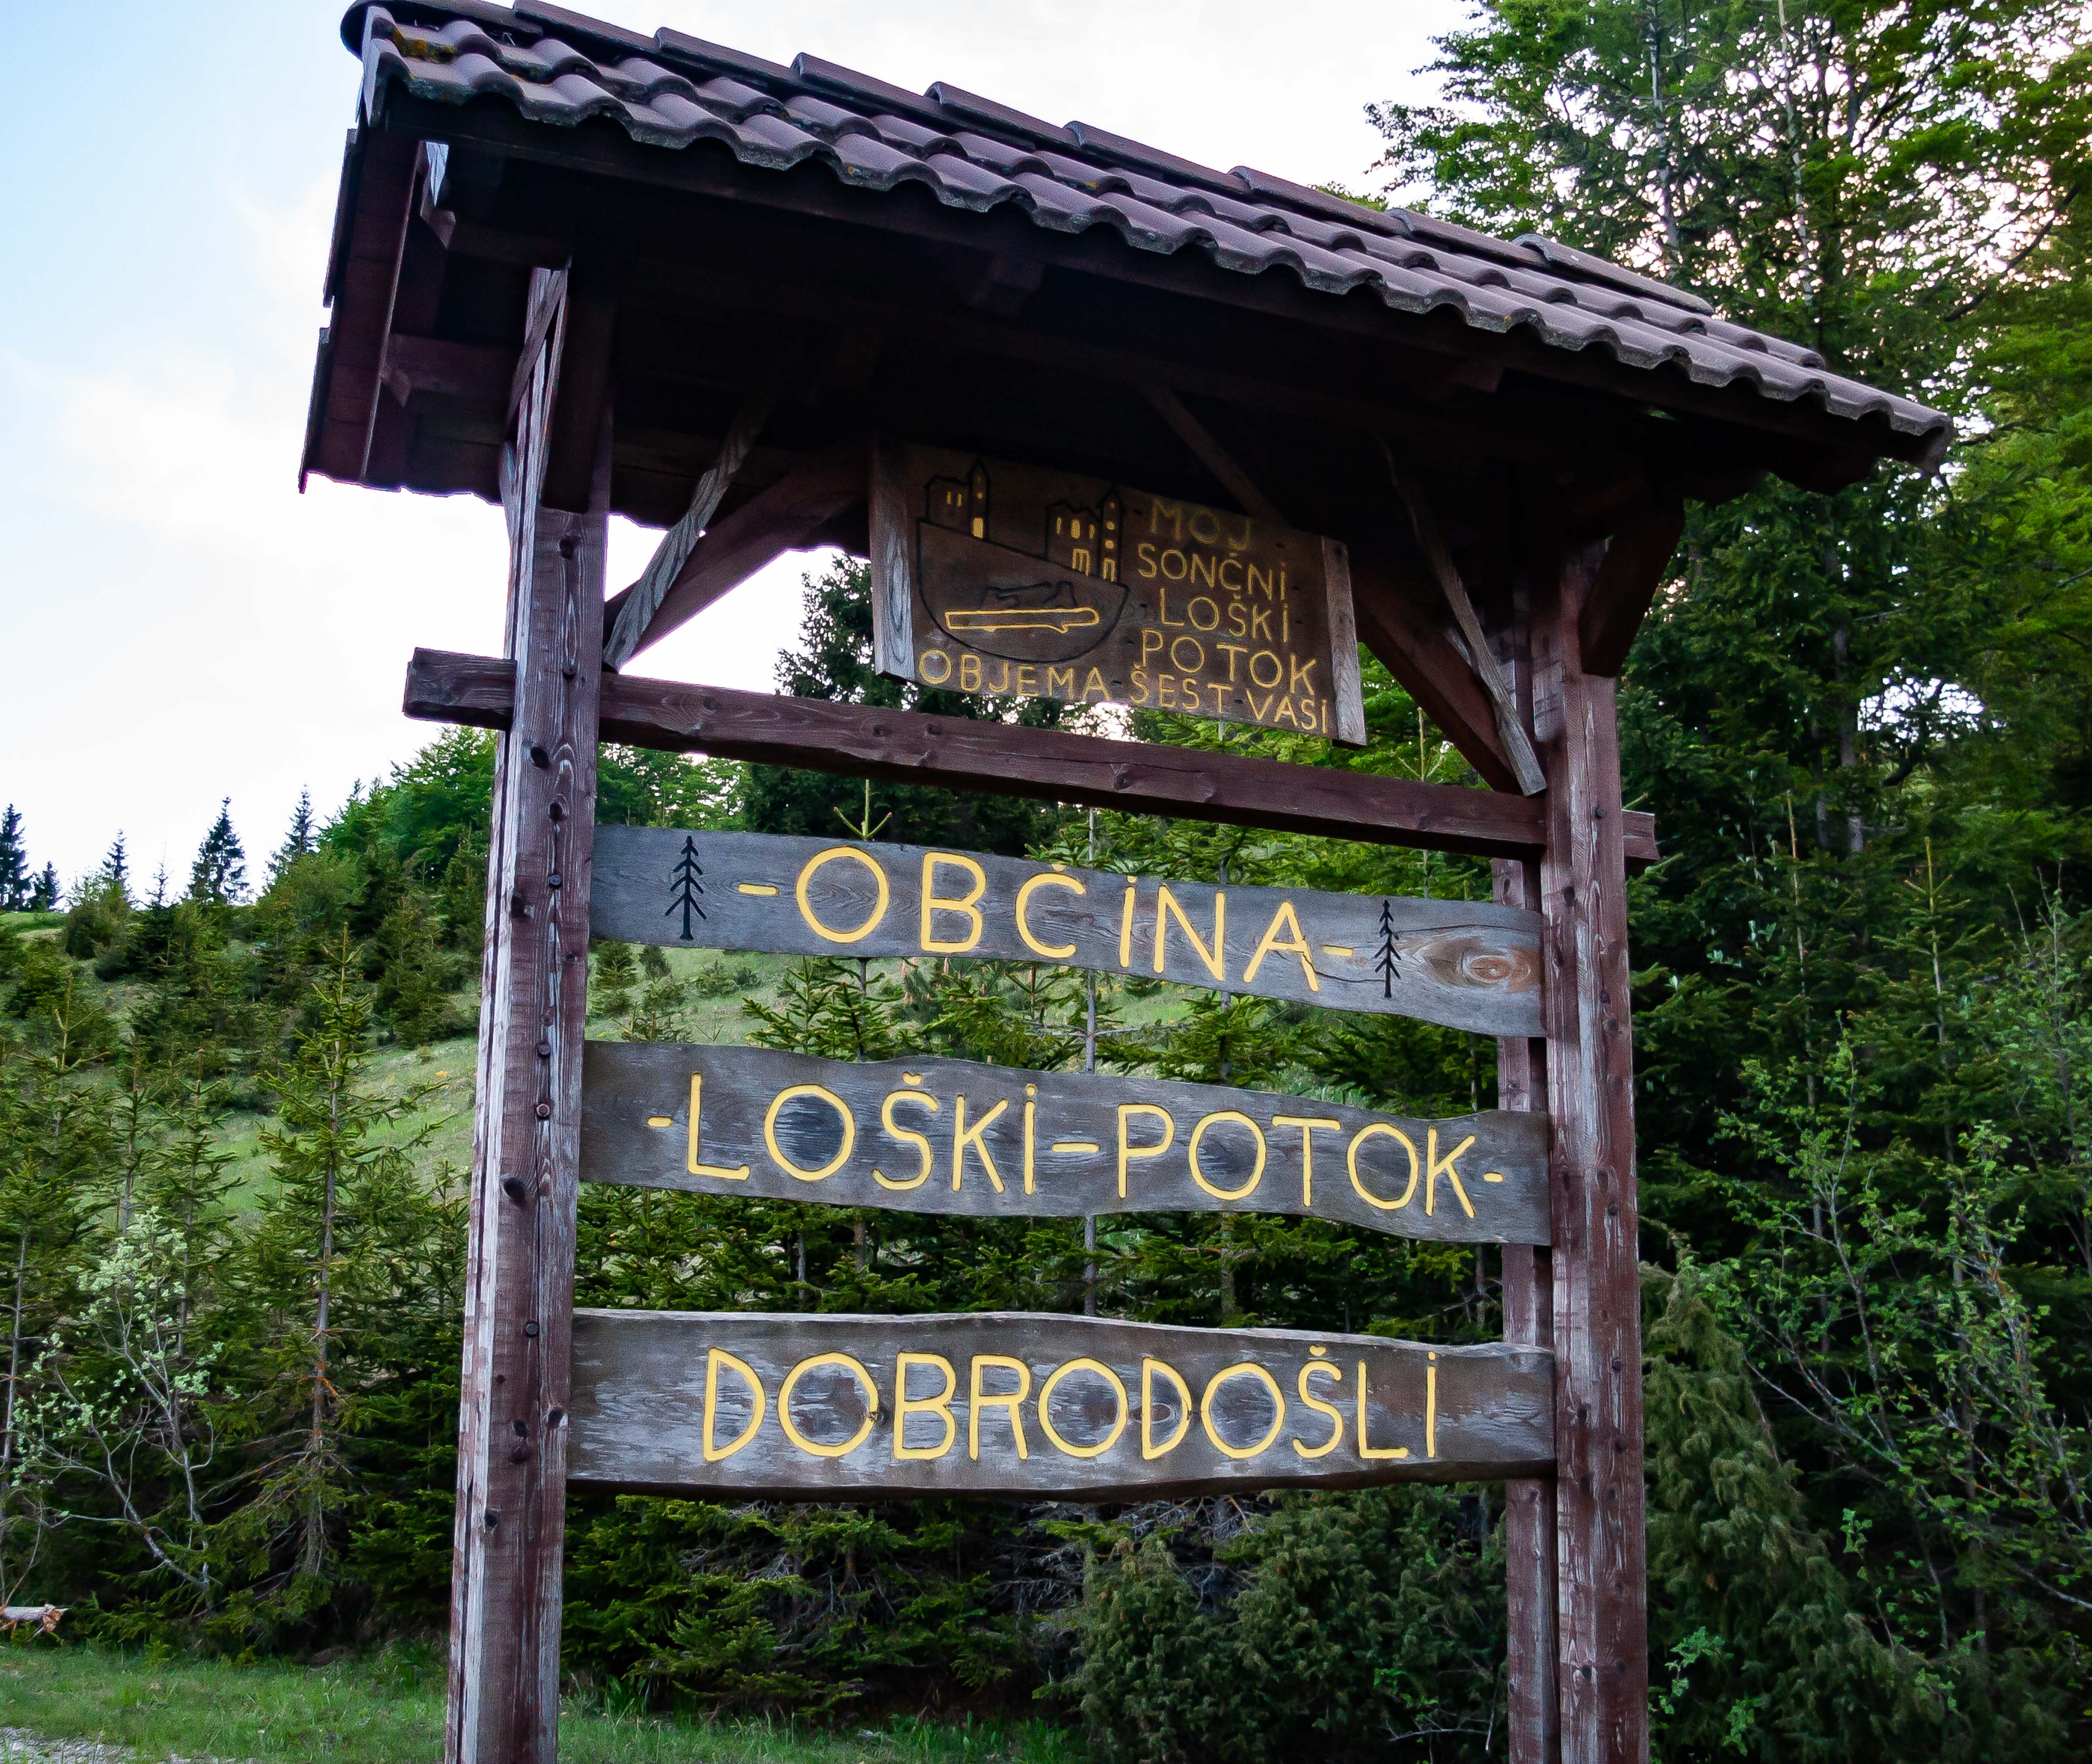 Slovenia, Loski Potok Prov, Dobrodosli Loski Potok Obcina, 2006, IMG 7141